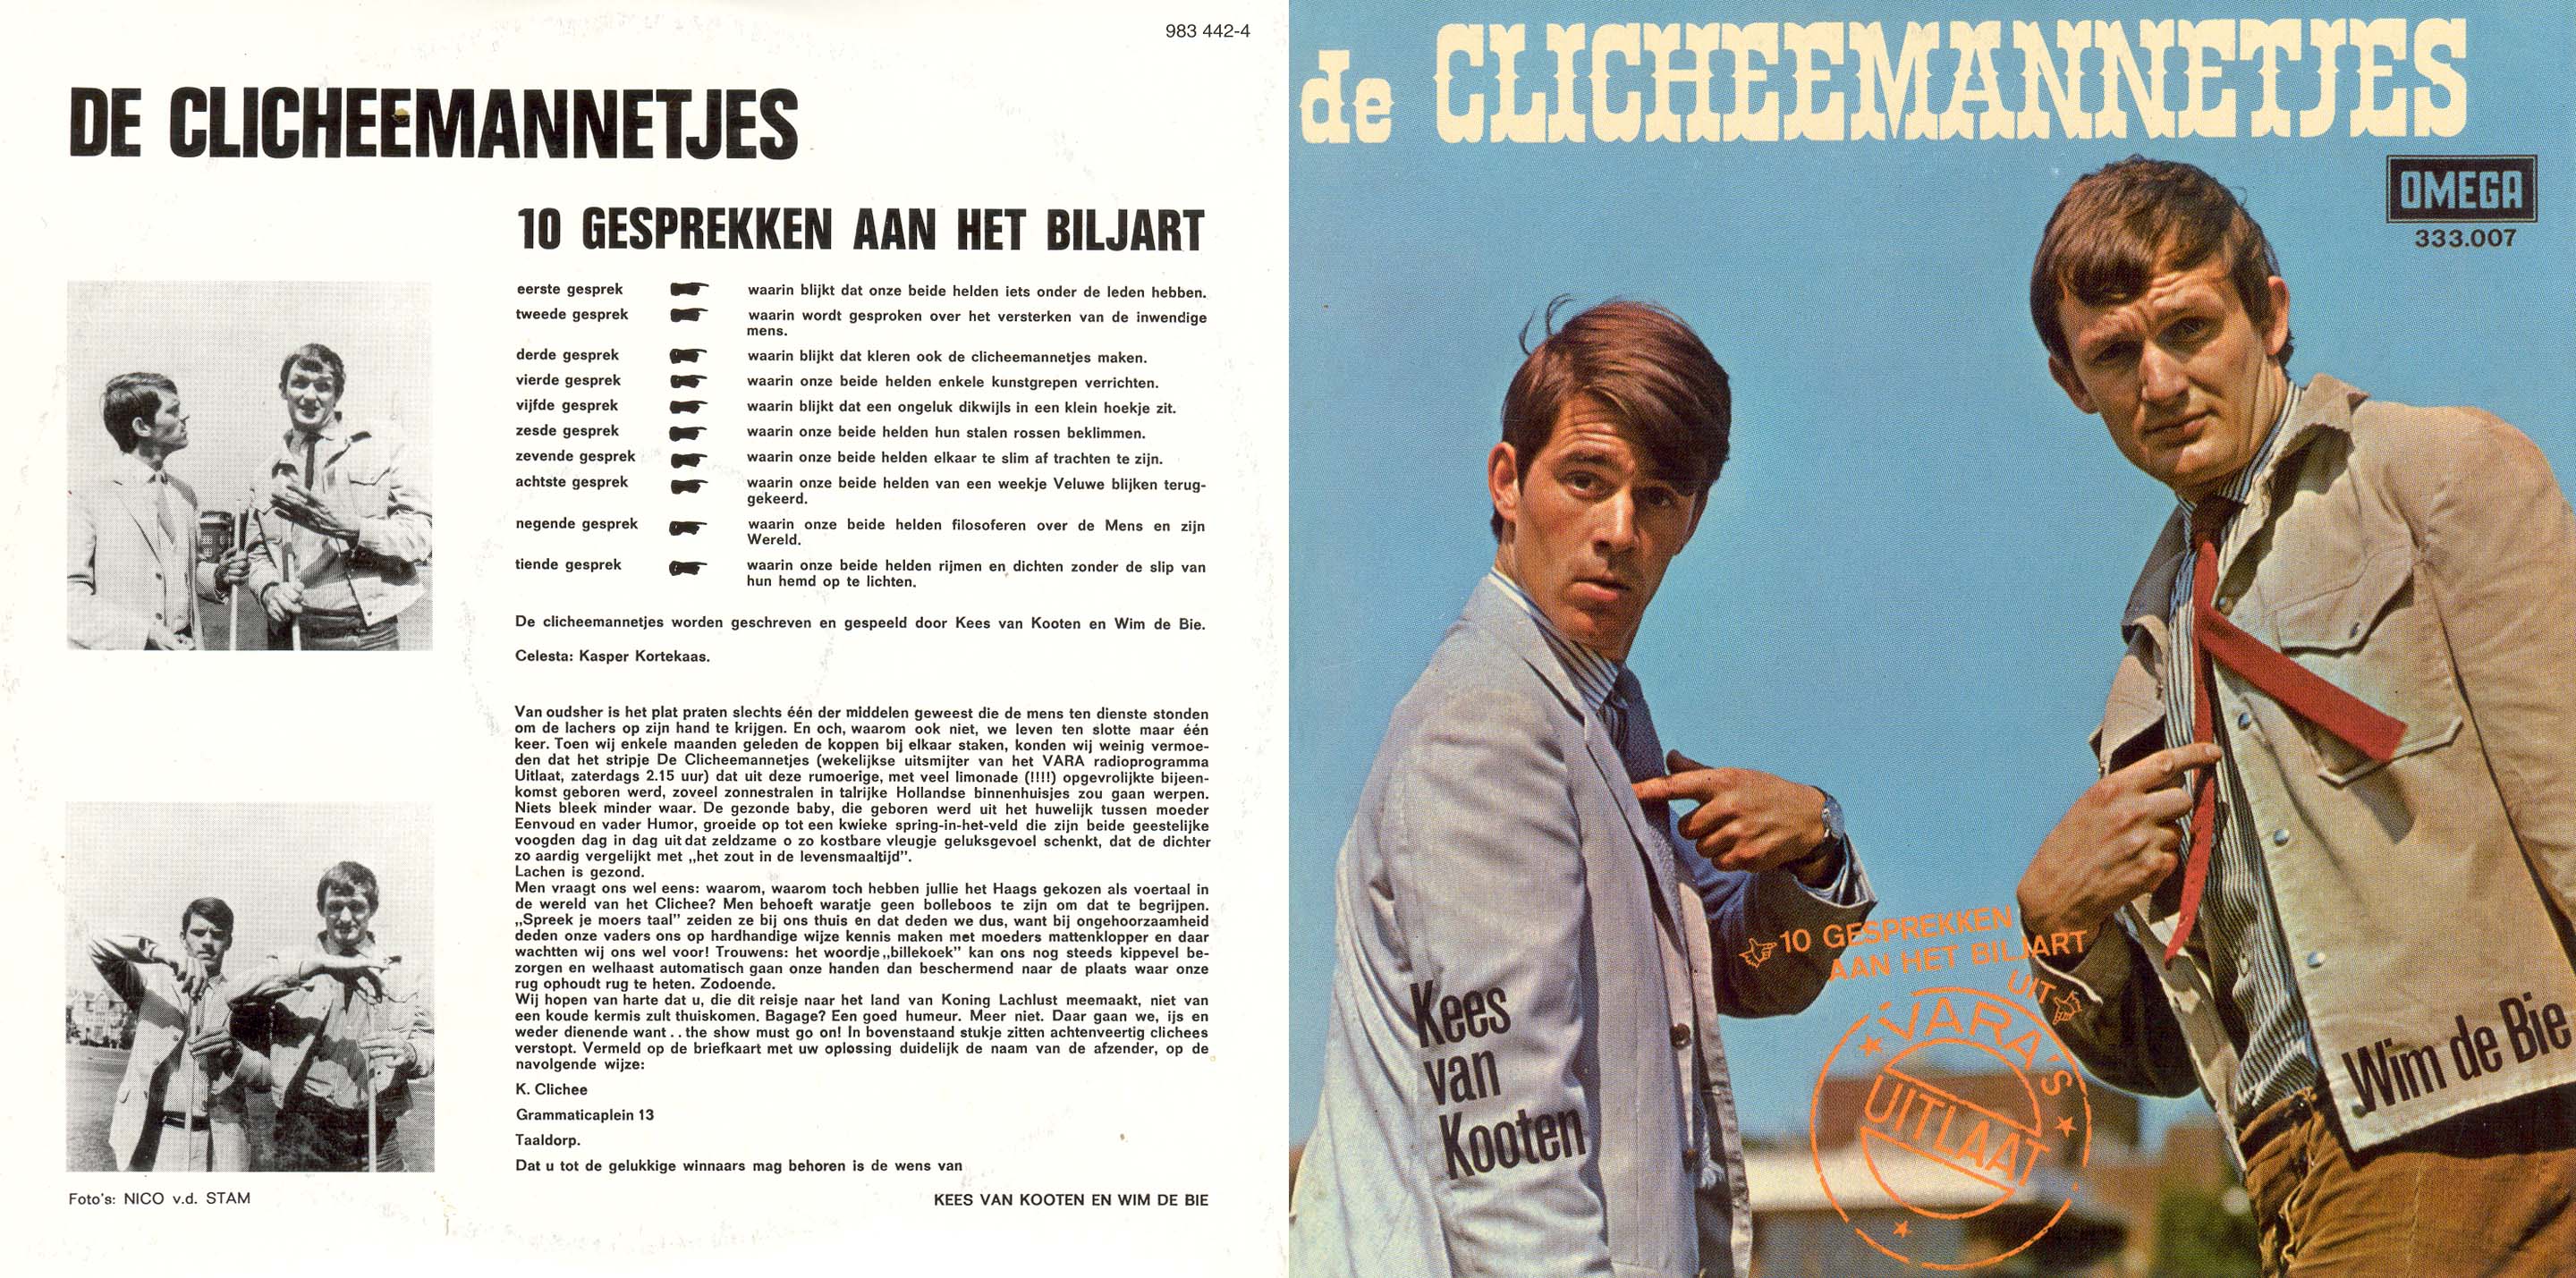 AANVULLING - van Kooten en de Bie Audiotheek CD 1 - De Clicheemannetjes